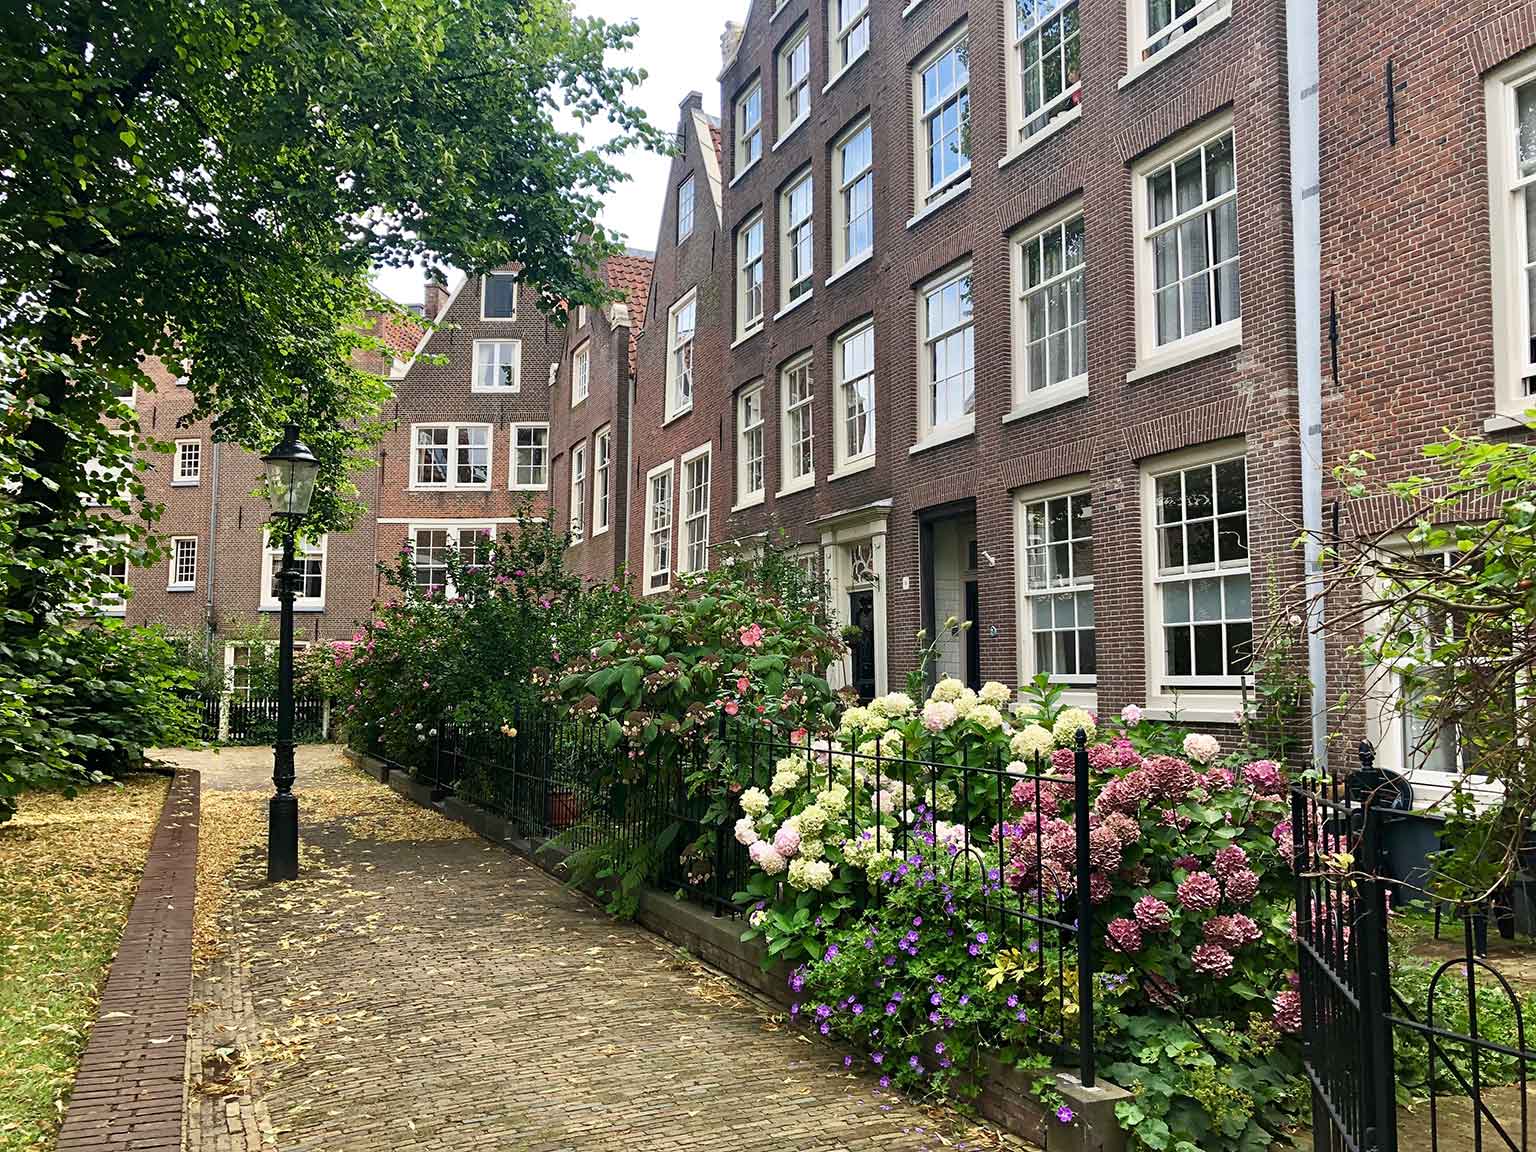 Huizen in het Begijnhof, Amsterdam, met bloemen in de voortuintjes